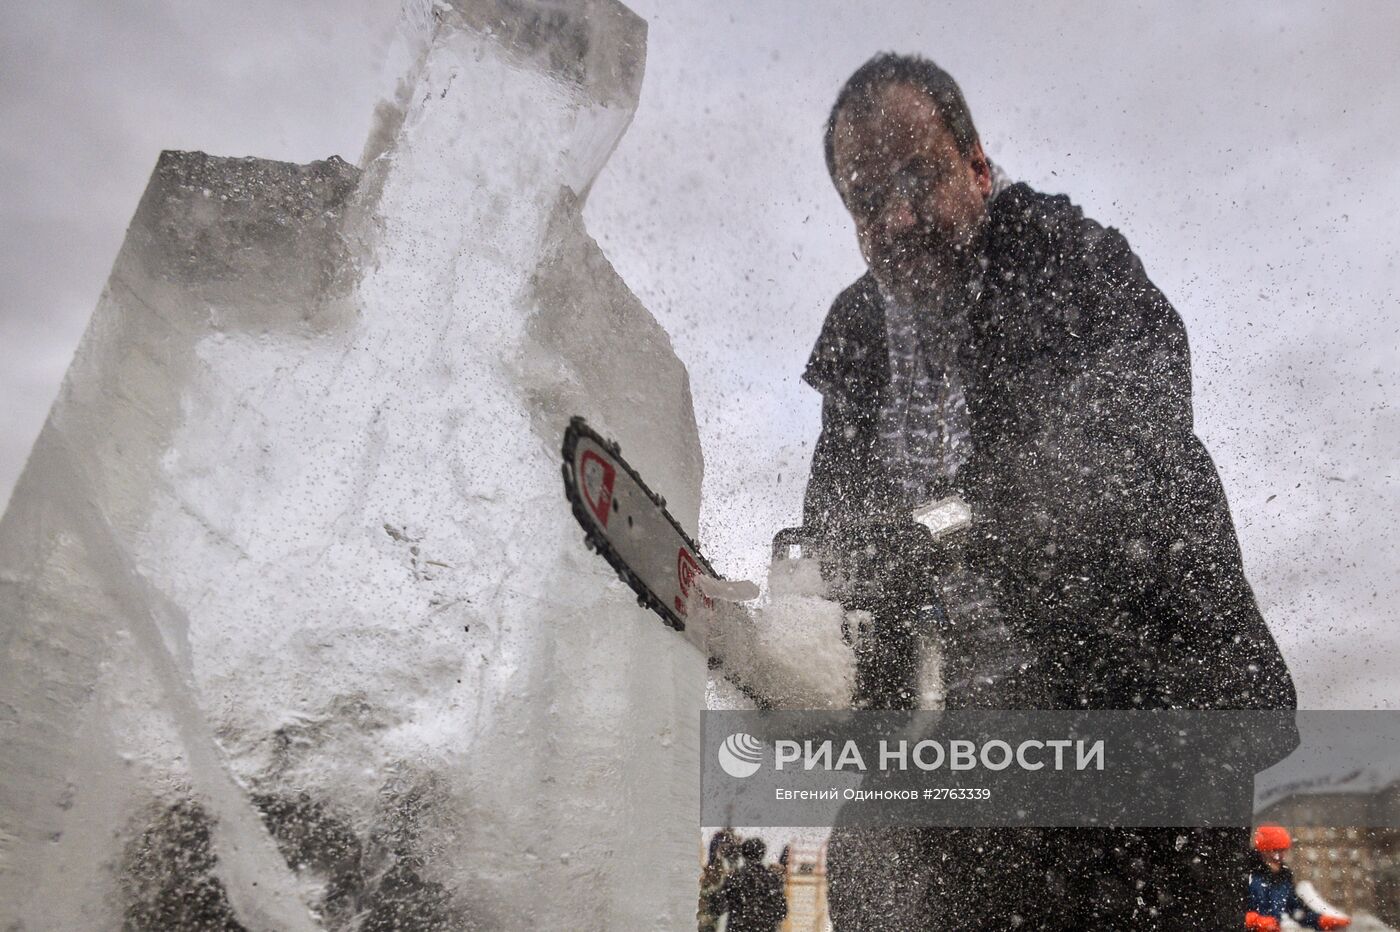 Мастер-класс по вырезанию ледовых фигур в Москве